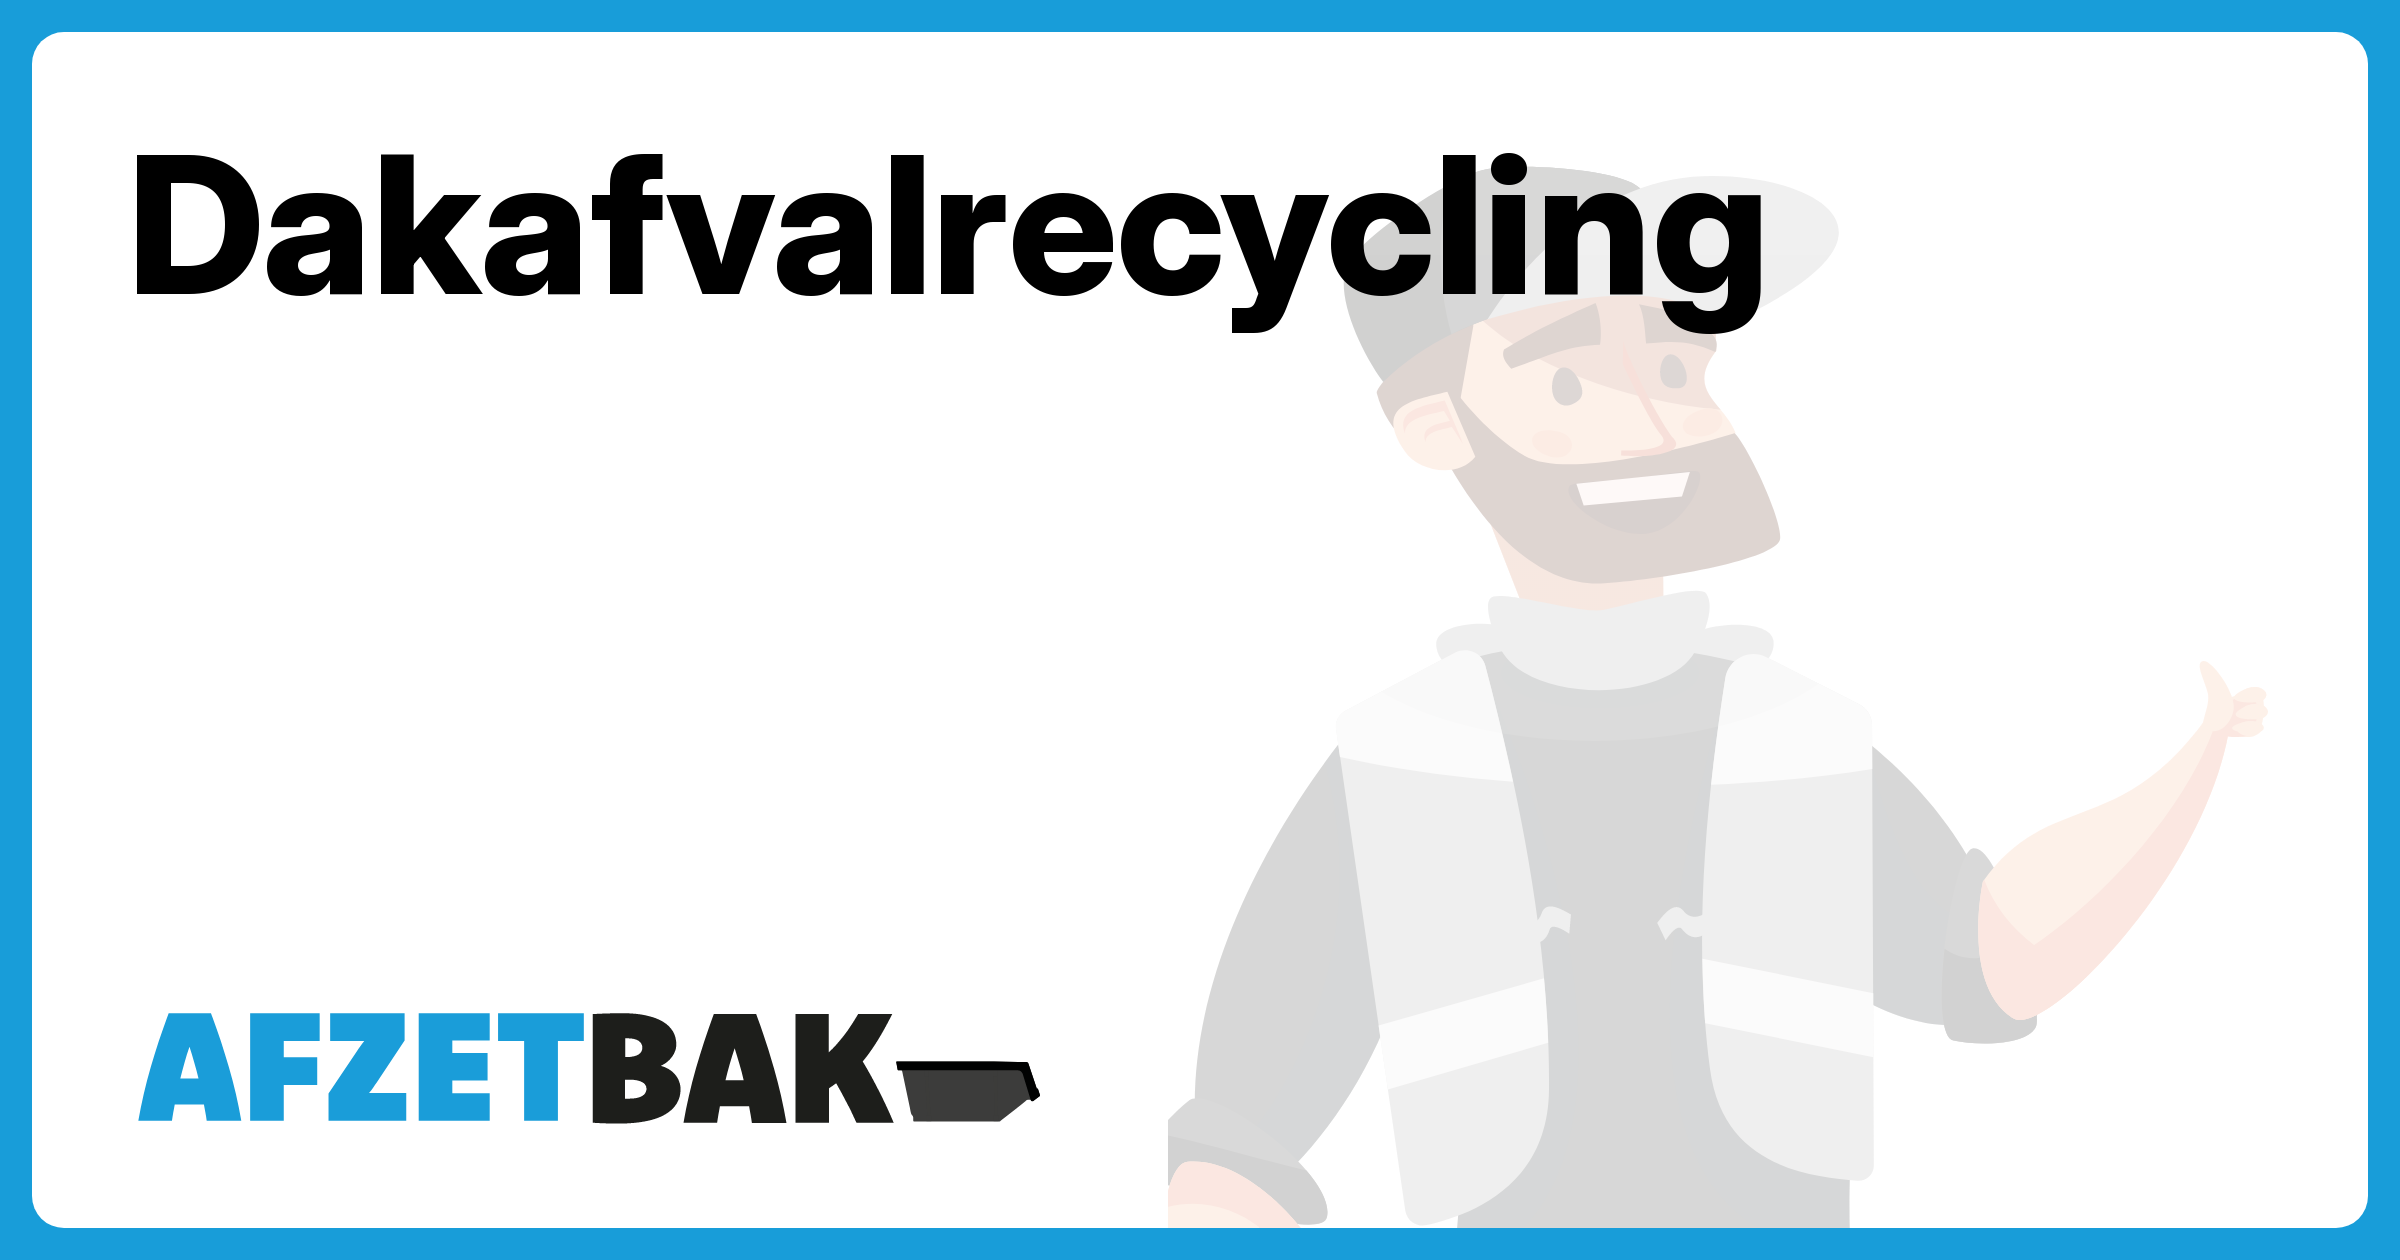 Dakafvalrecycling - Afzetbak.nl